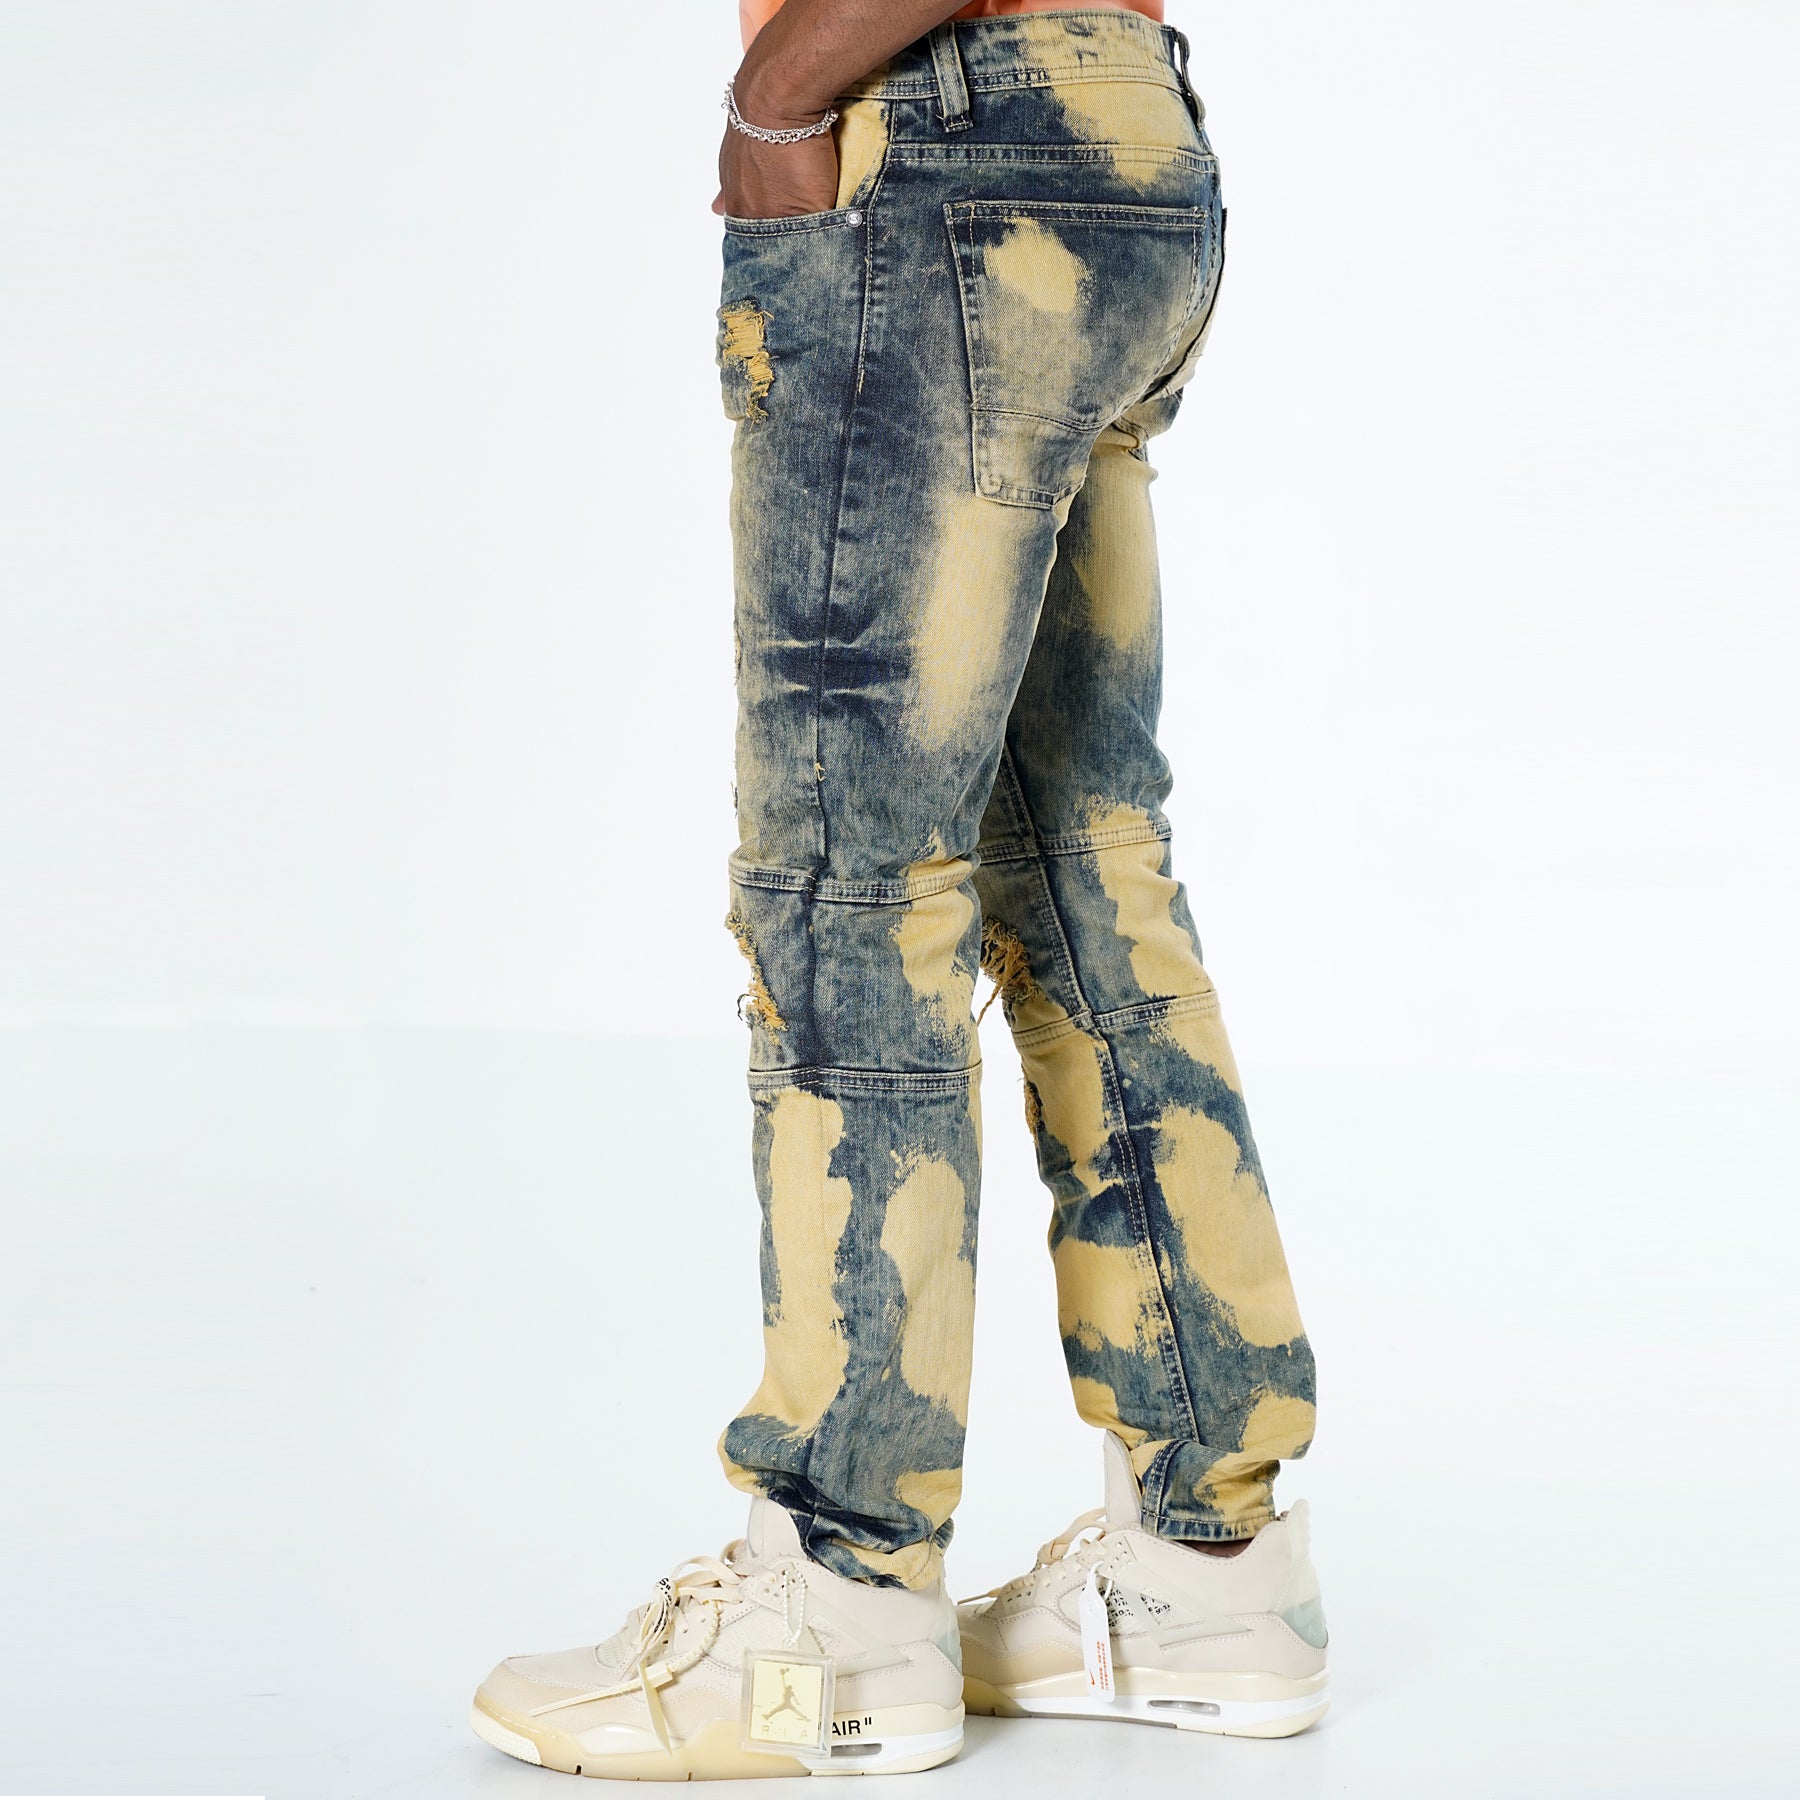 M1784 Makobi Shredded Denim Jeans - Vintage Wash